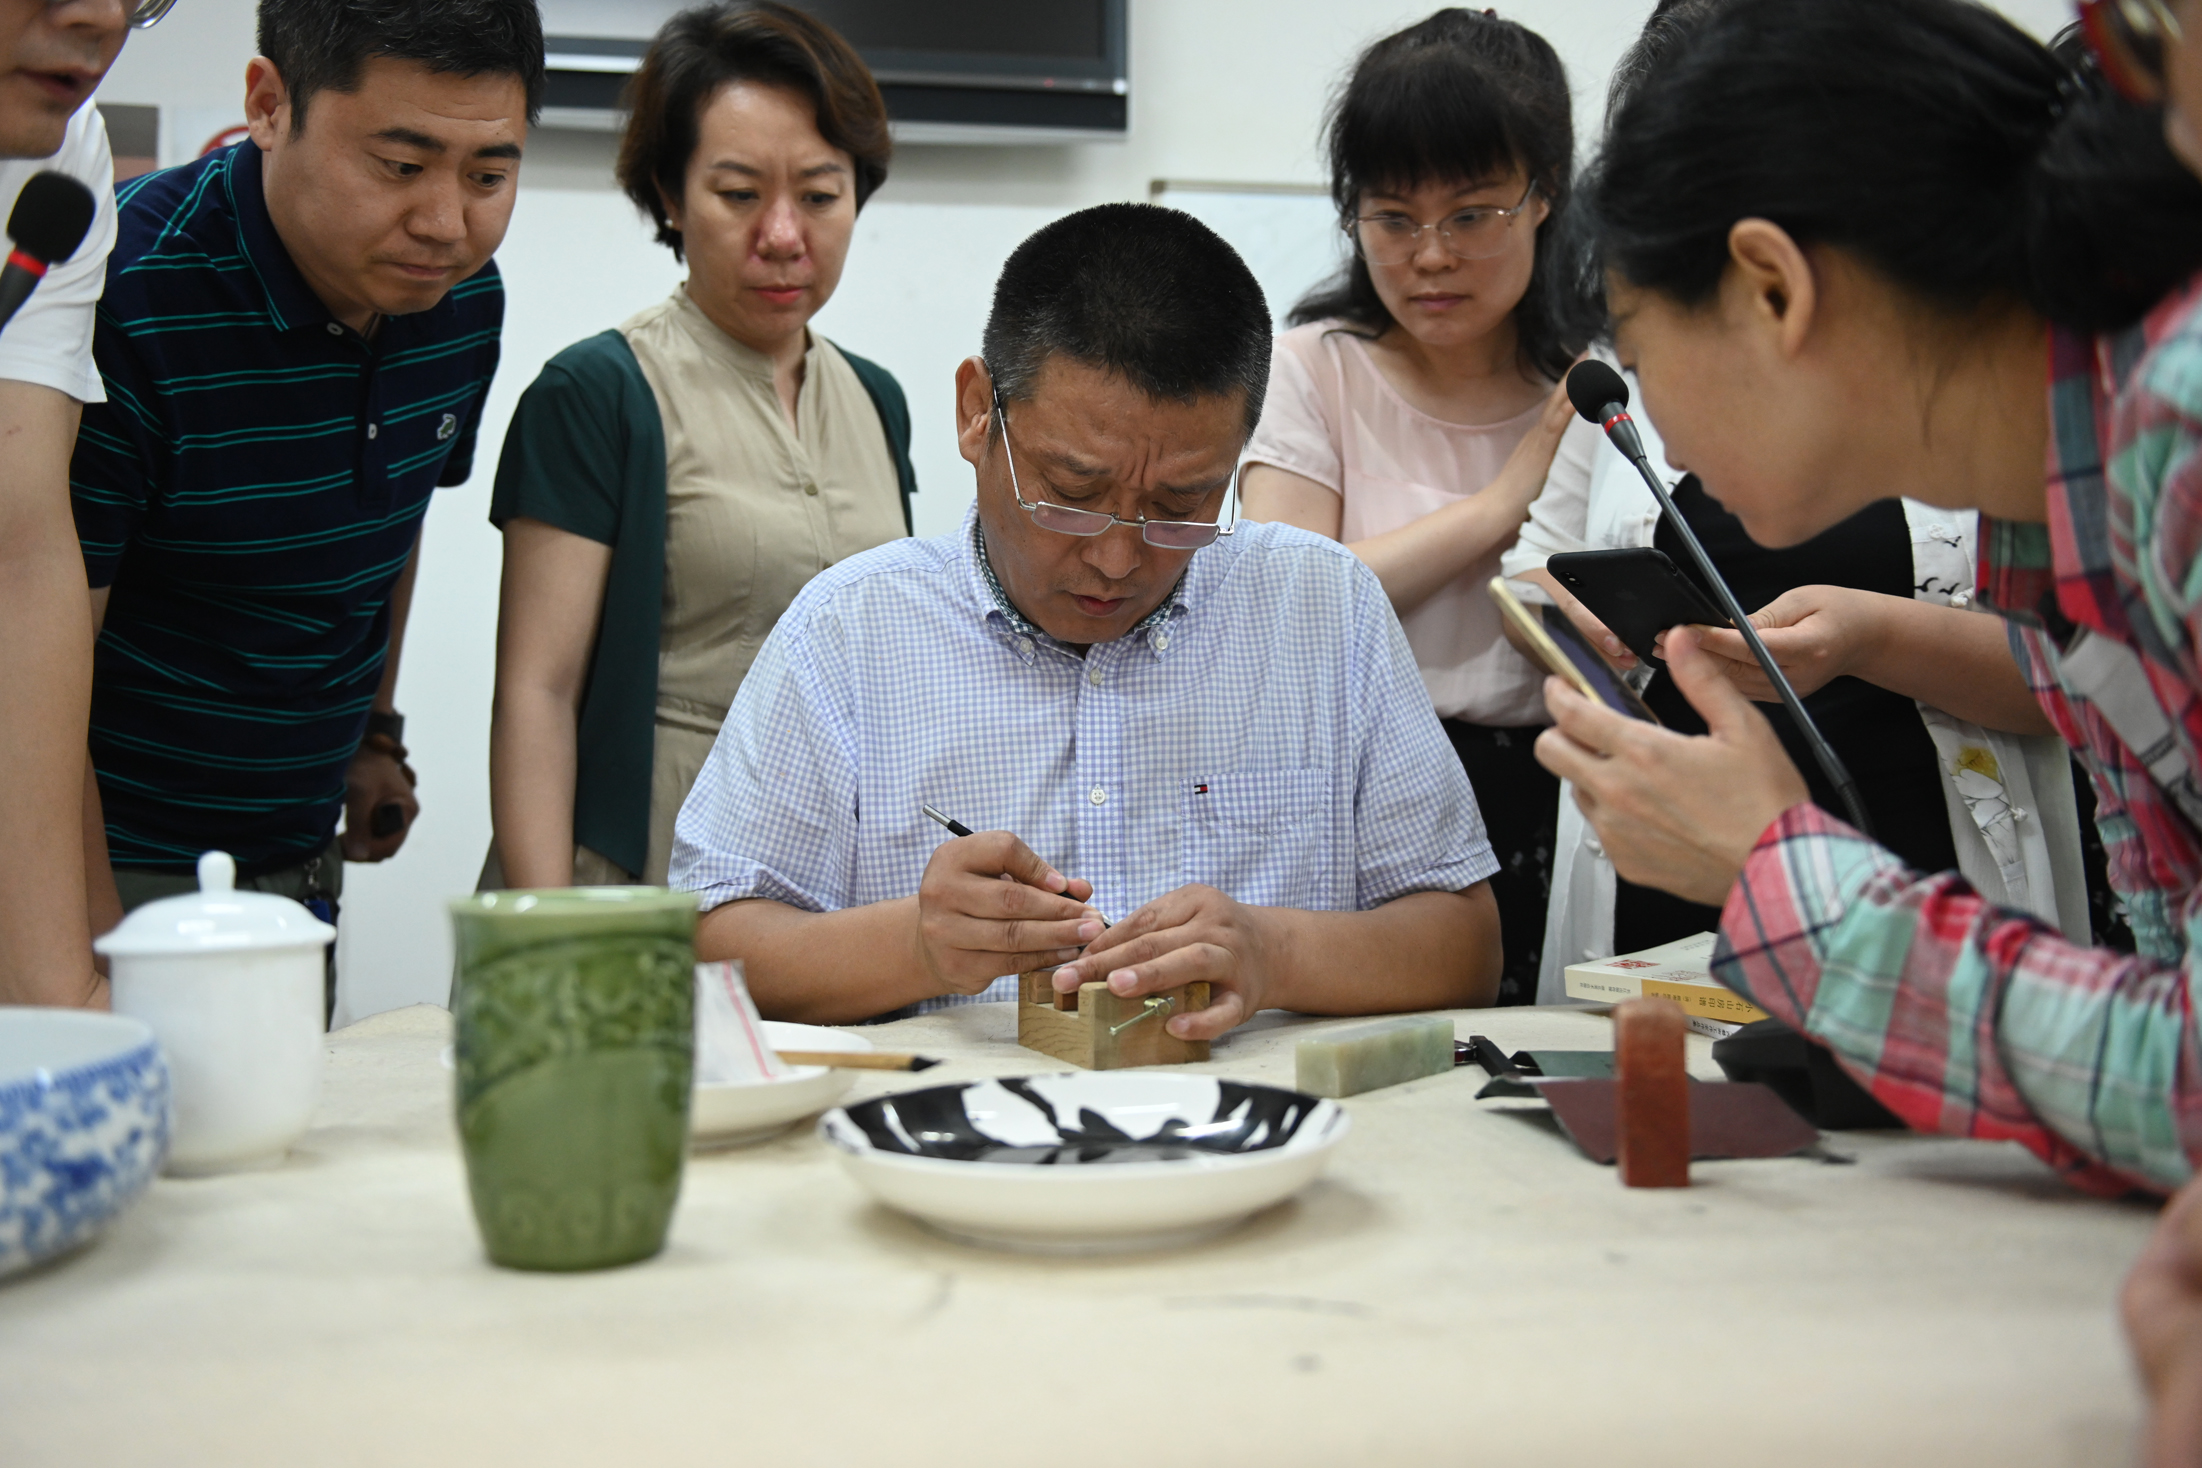 中国国家画院艺术信息中心负责人、研究员 魏广君授课现场